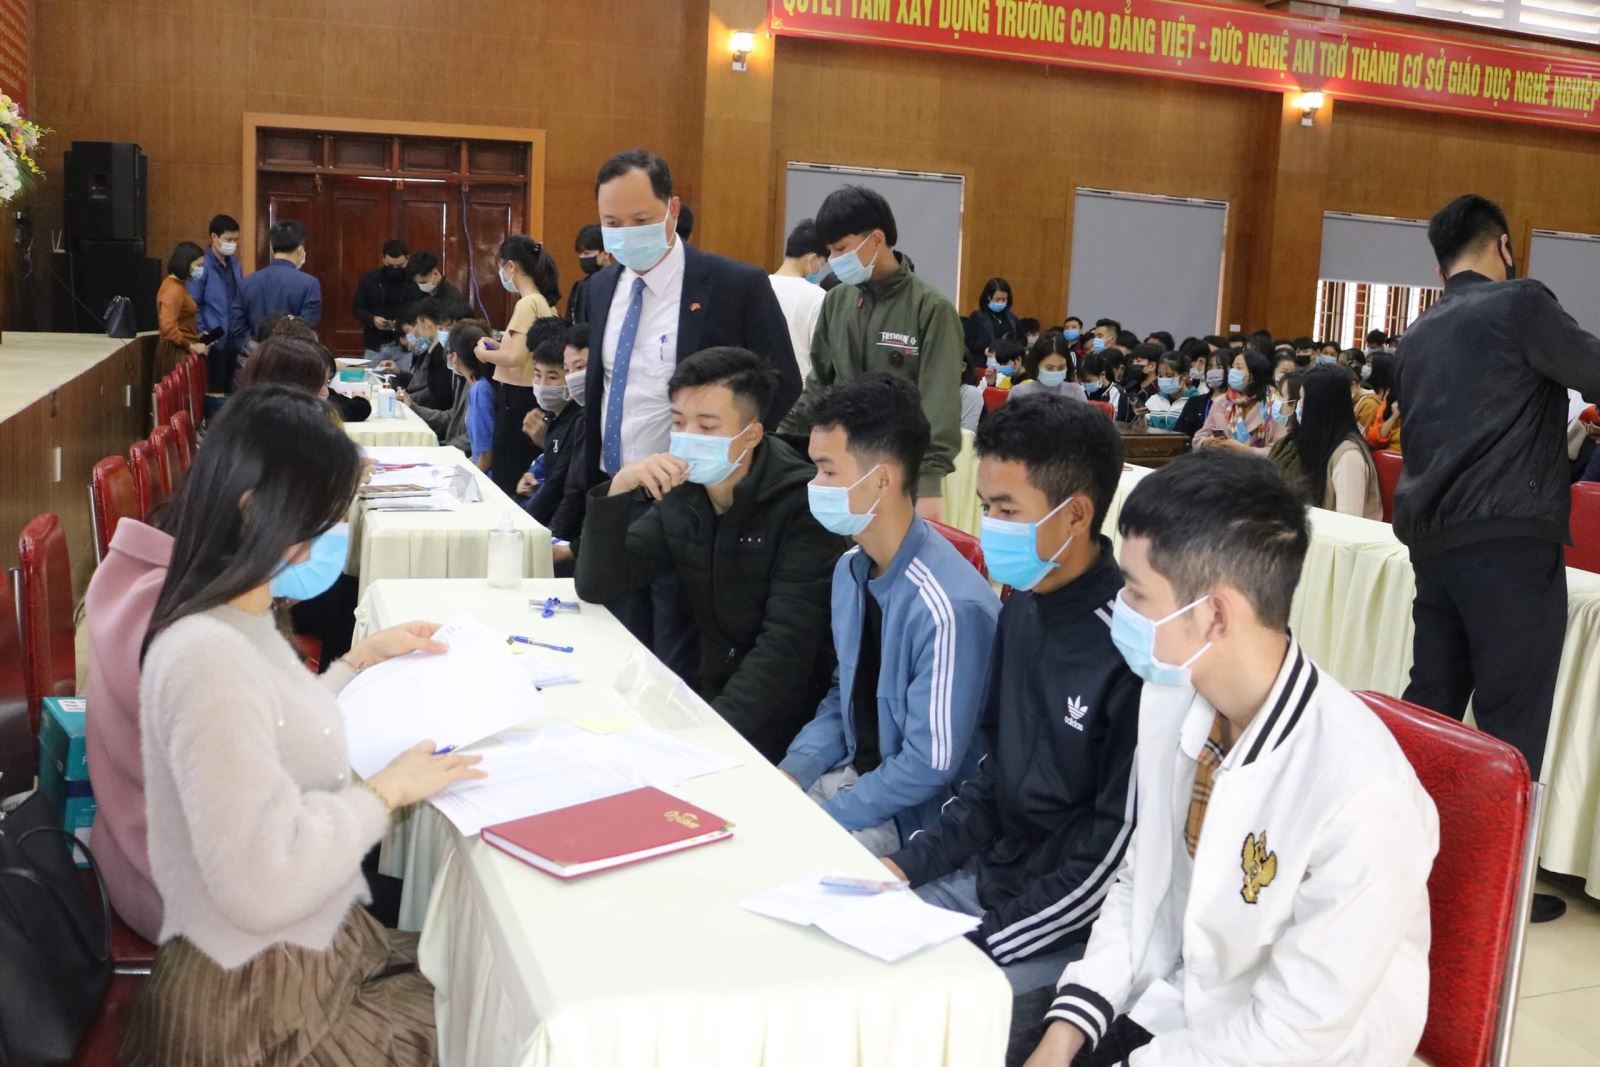 Trường Cao đẳng Việt – Đức Nghệ An tổ chức chi trả chế độ chính sách nội  trú cho học sinh, sinh viên học kỳ 1 – năm học 2020 - 2021 -